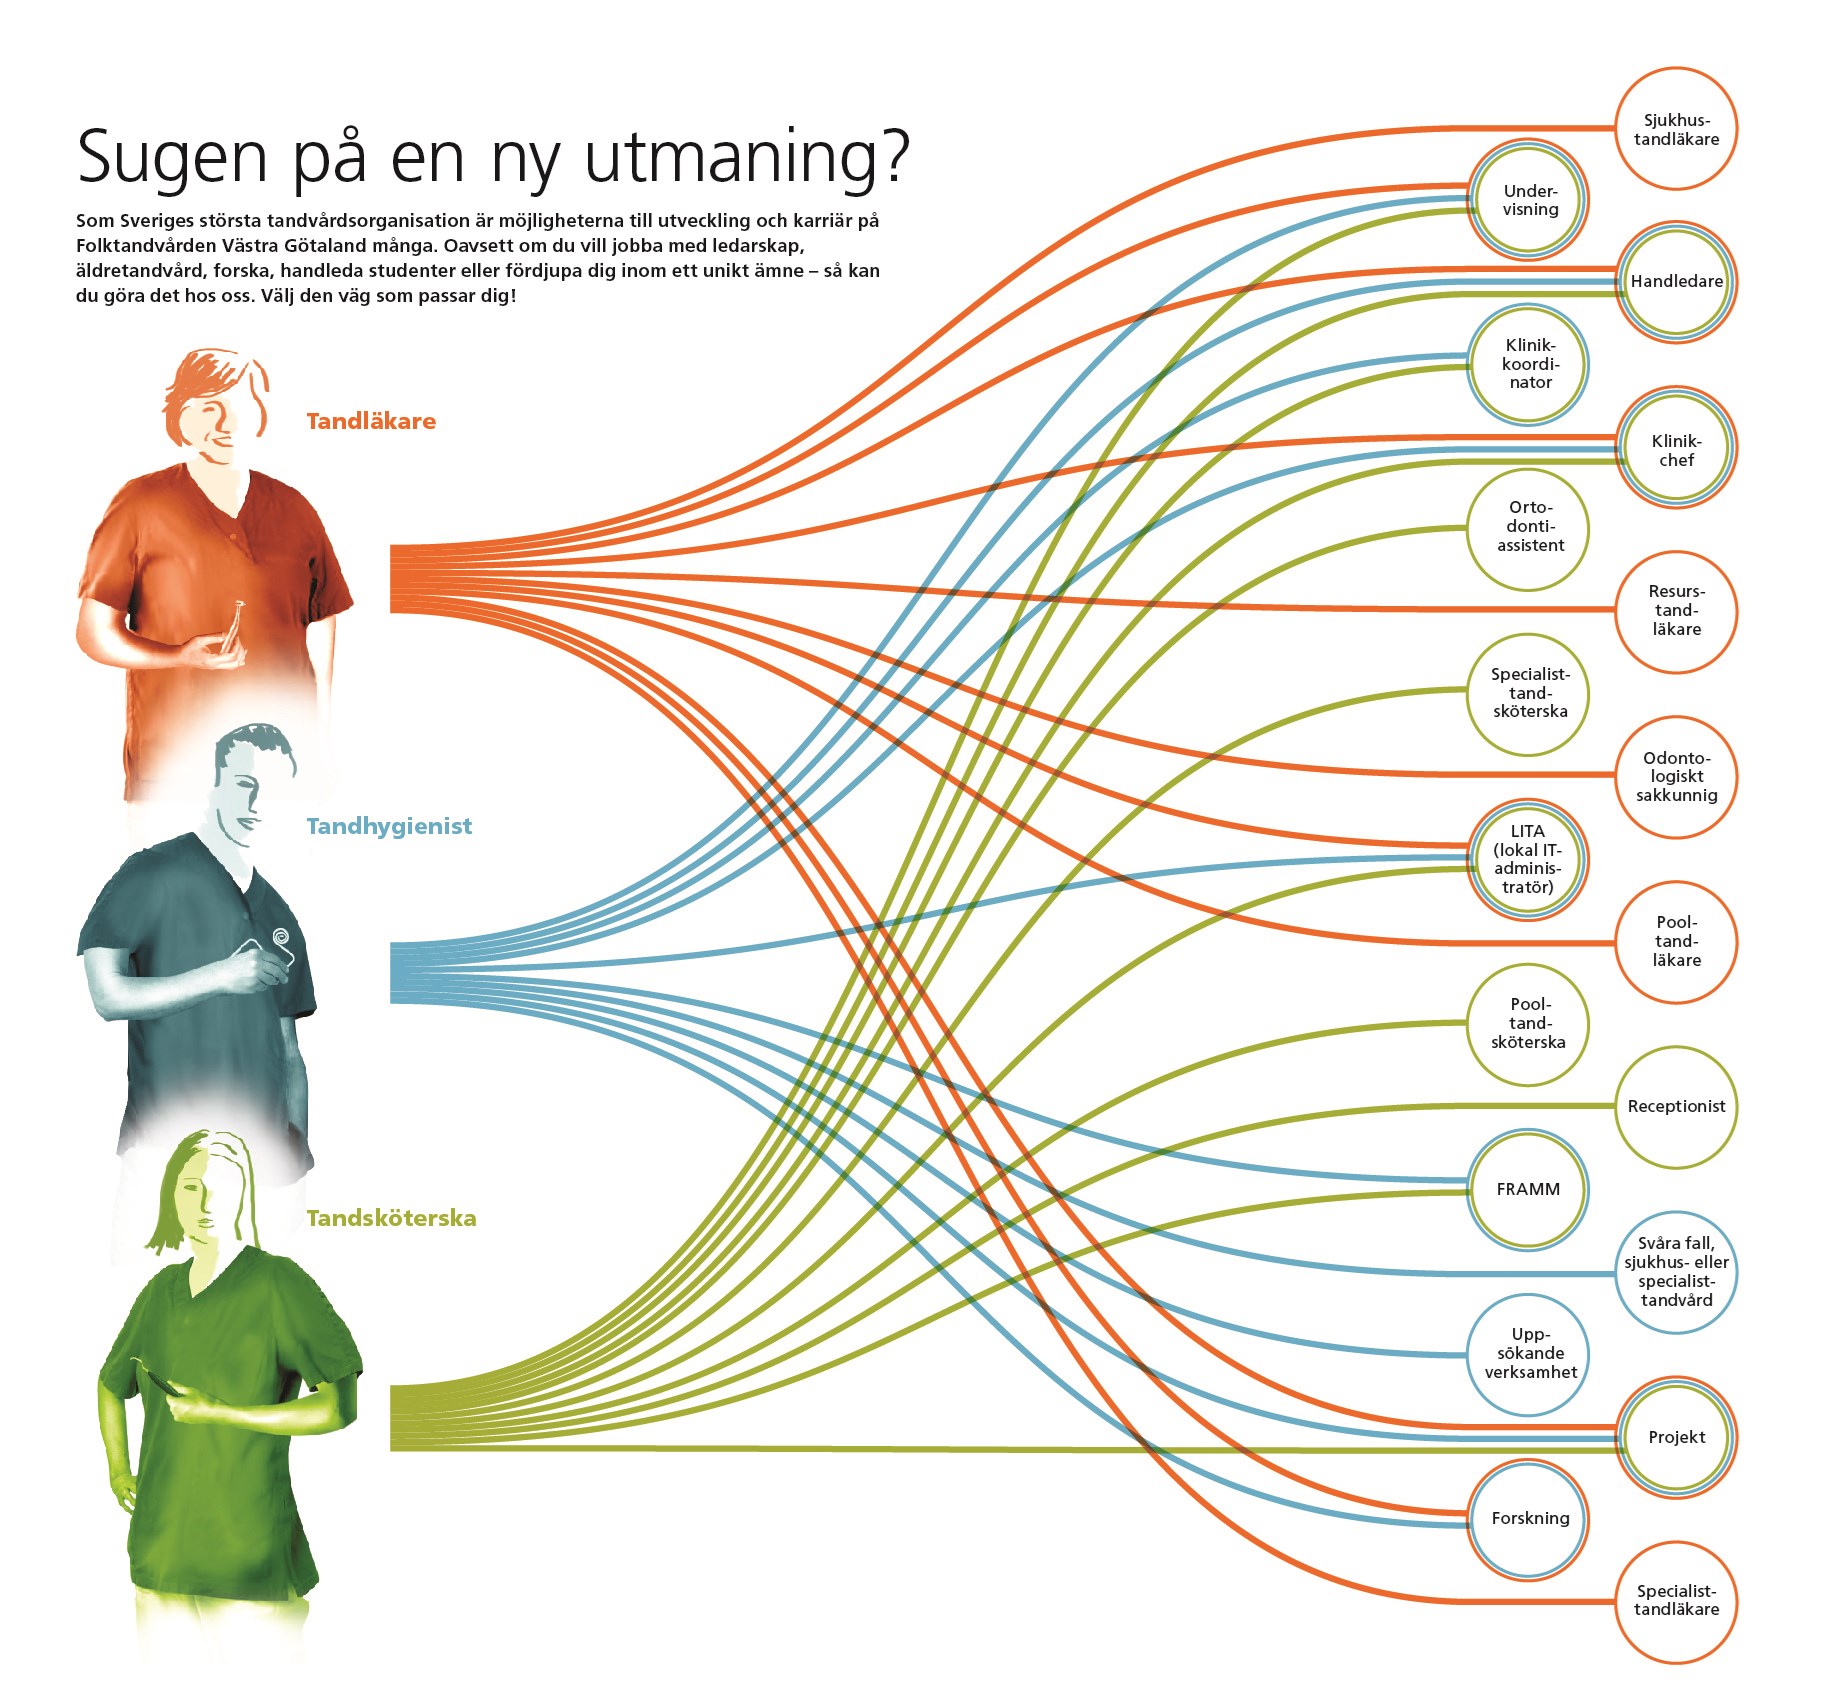 En infografic om de olika karriärvägar inom Folktandvården Västra Götaland. Tre personer på bilden som repsrenterar tandläkare, tandhygienist och tandsköterska och deras olika karriärvägar.